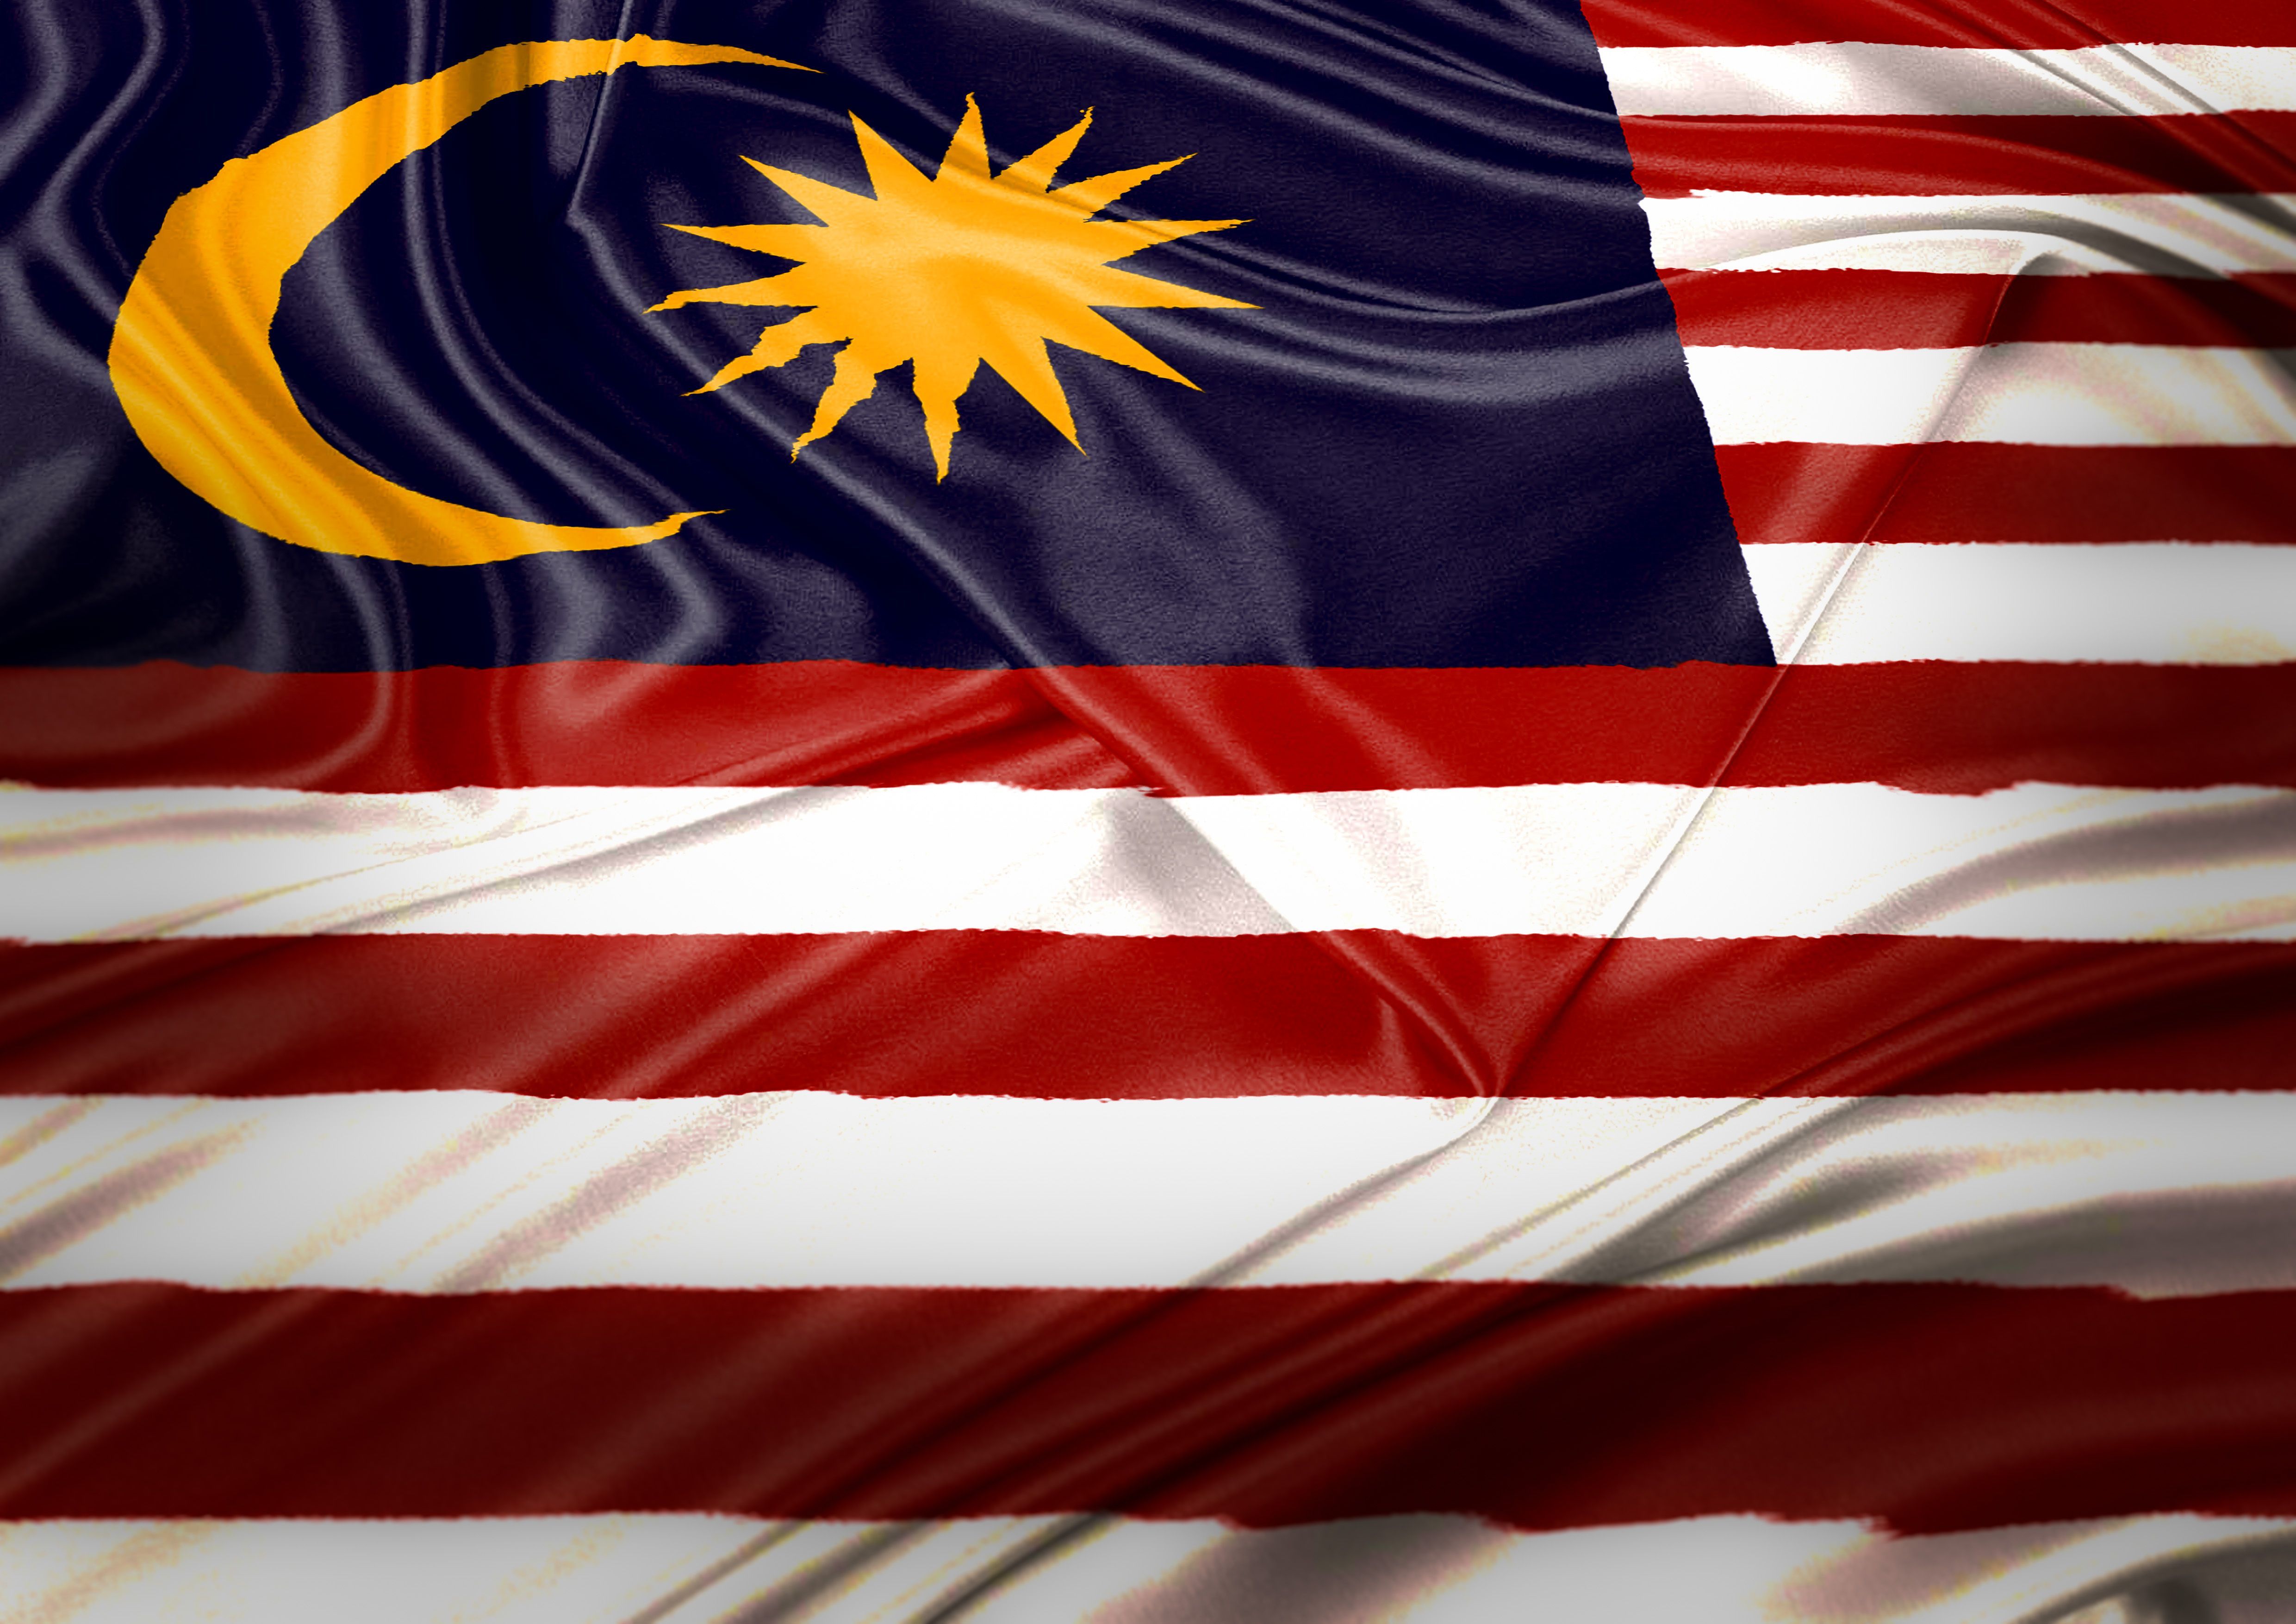 SELAMAT MENYAMBUT HARI KEMERDEKAAN KE 59 #Merdeka #SehatiSejiwa #HariKebangsaan #Malaysia #BenderaMalaysia. Flag, Poster, History